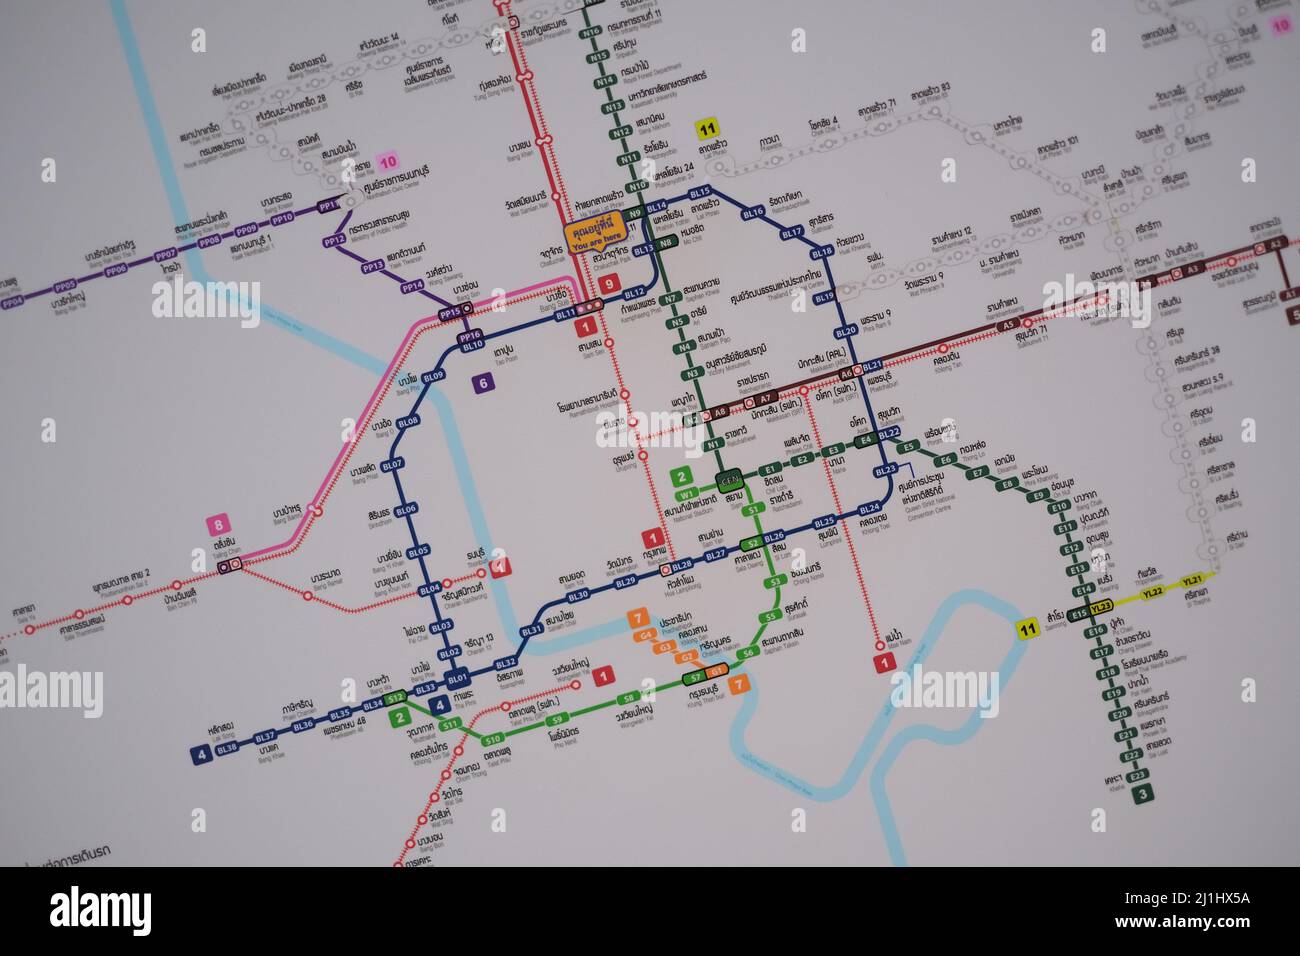 Mappa parziale delle linee urbane del 'treno a y' di Bangkok. I nomi non inglesi sono accompagnati da una traduzione in inglese Foto Stock